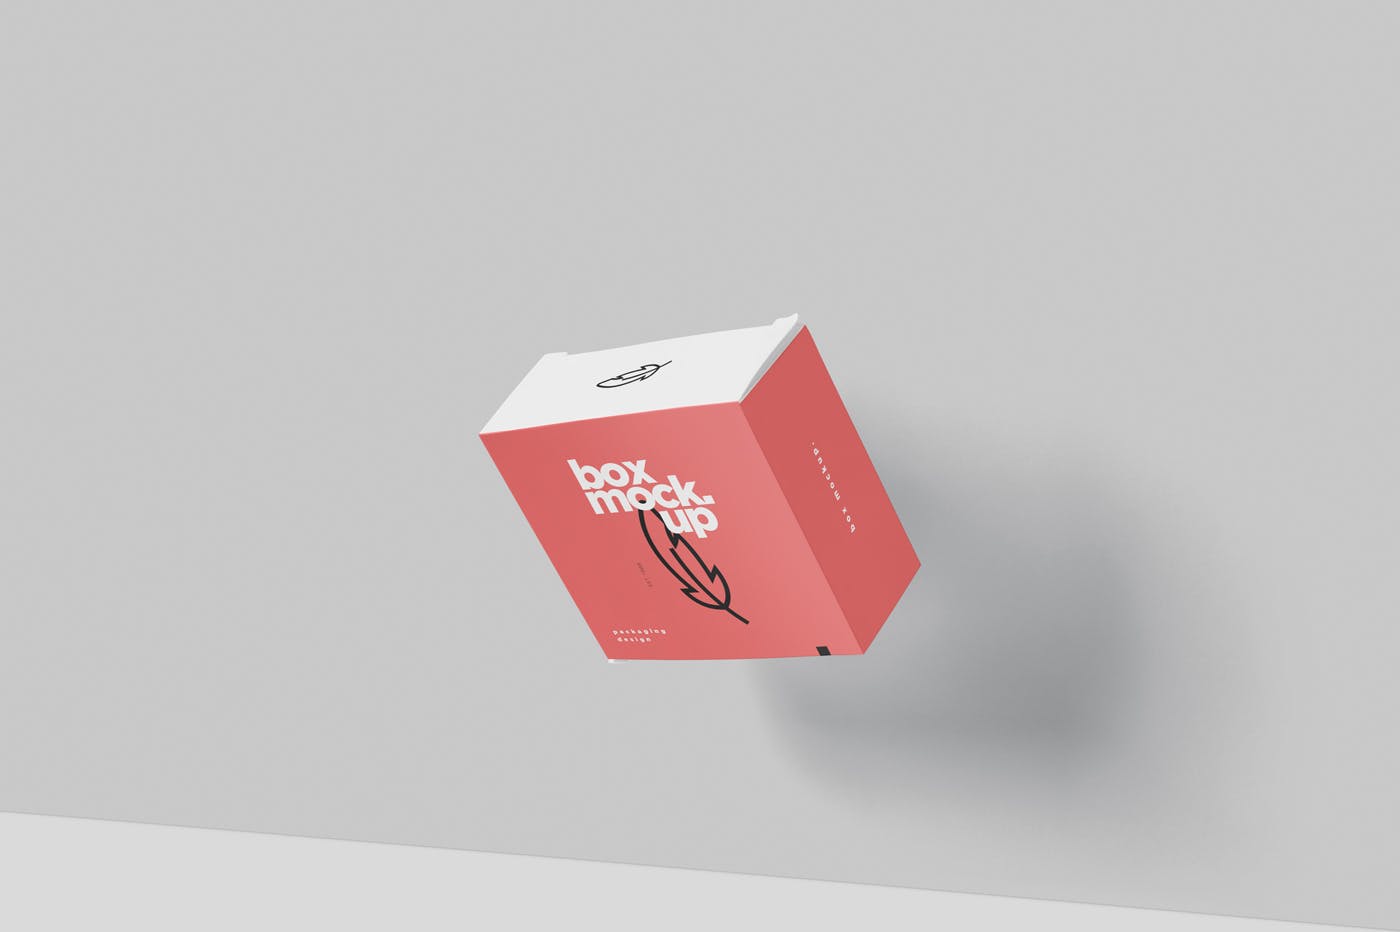 扁平方形包装盒外观设计效果图蚂蚁素材精选 Box Mockup – Square Slim Size插图(3)